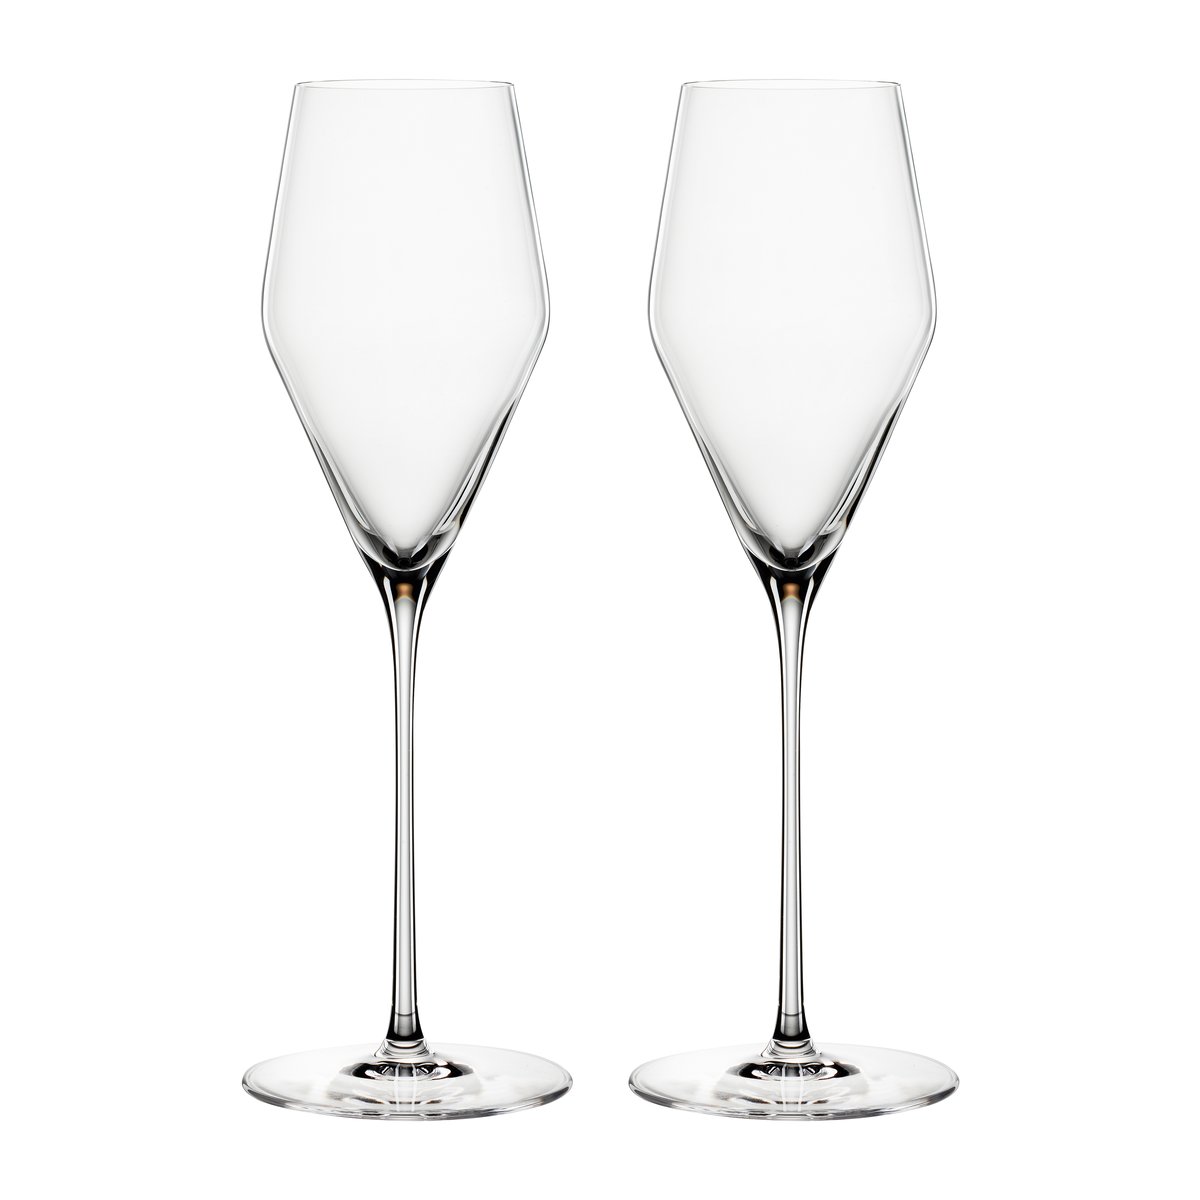 Spiegelau Definition champagneglas 25 cl 2-pak Klar